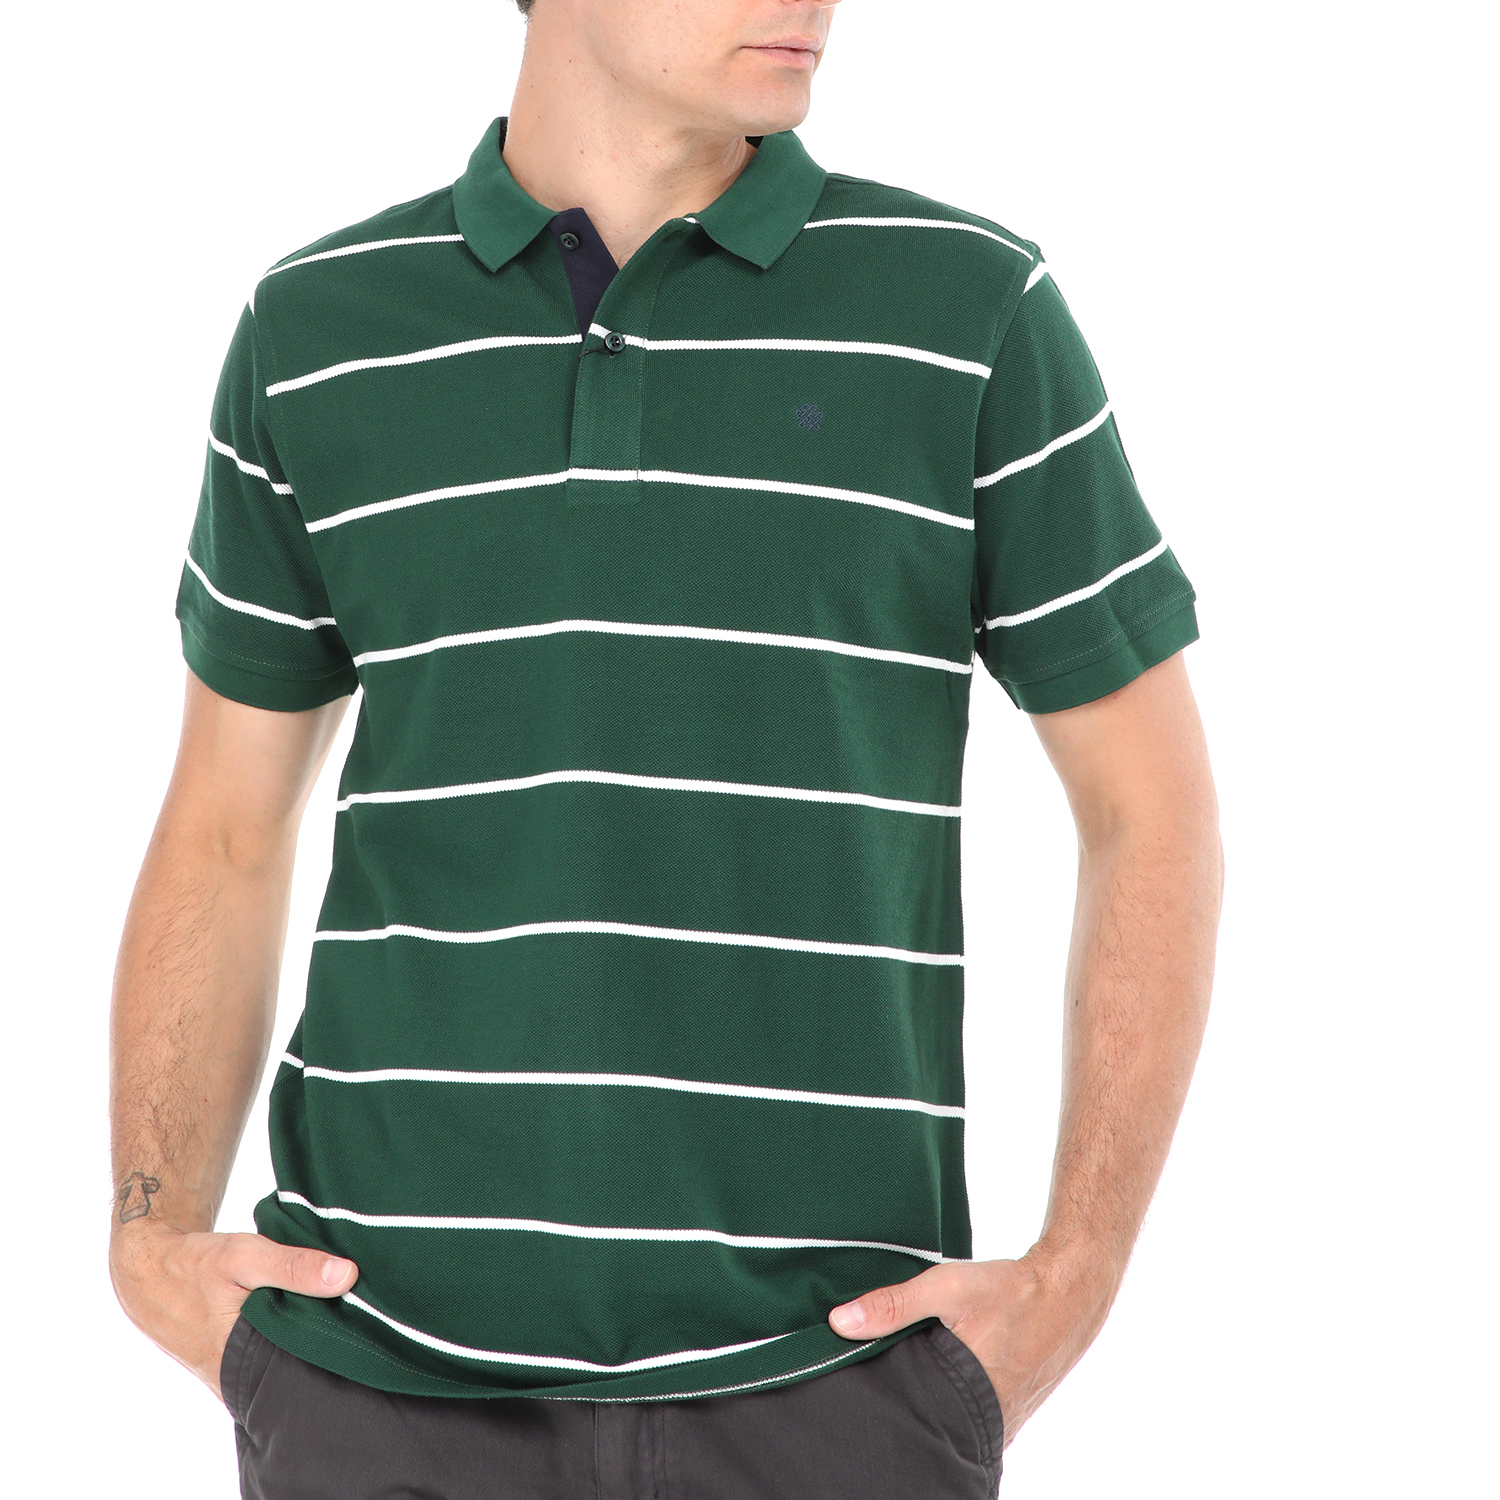 Ανδρικά/Ρούχα/Μπλούζες/Πόλο DORS - Ανδρική polo μπλούζα DORS πράσινη